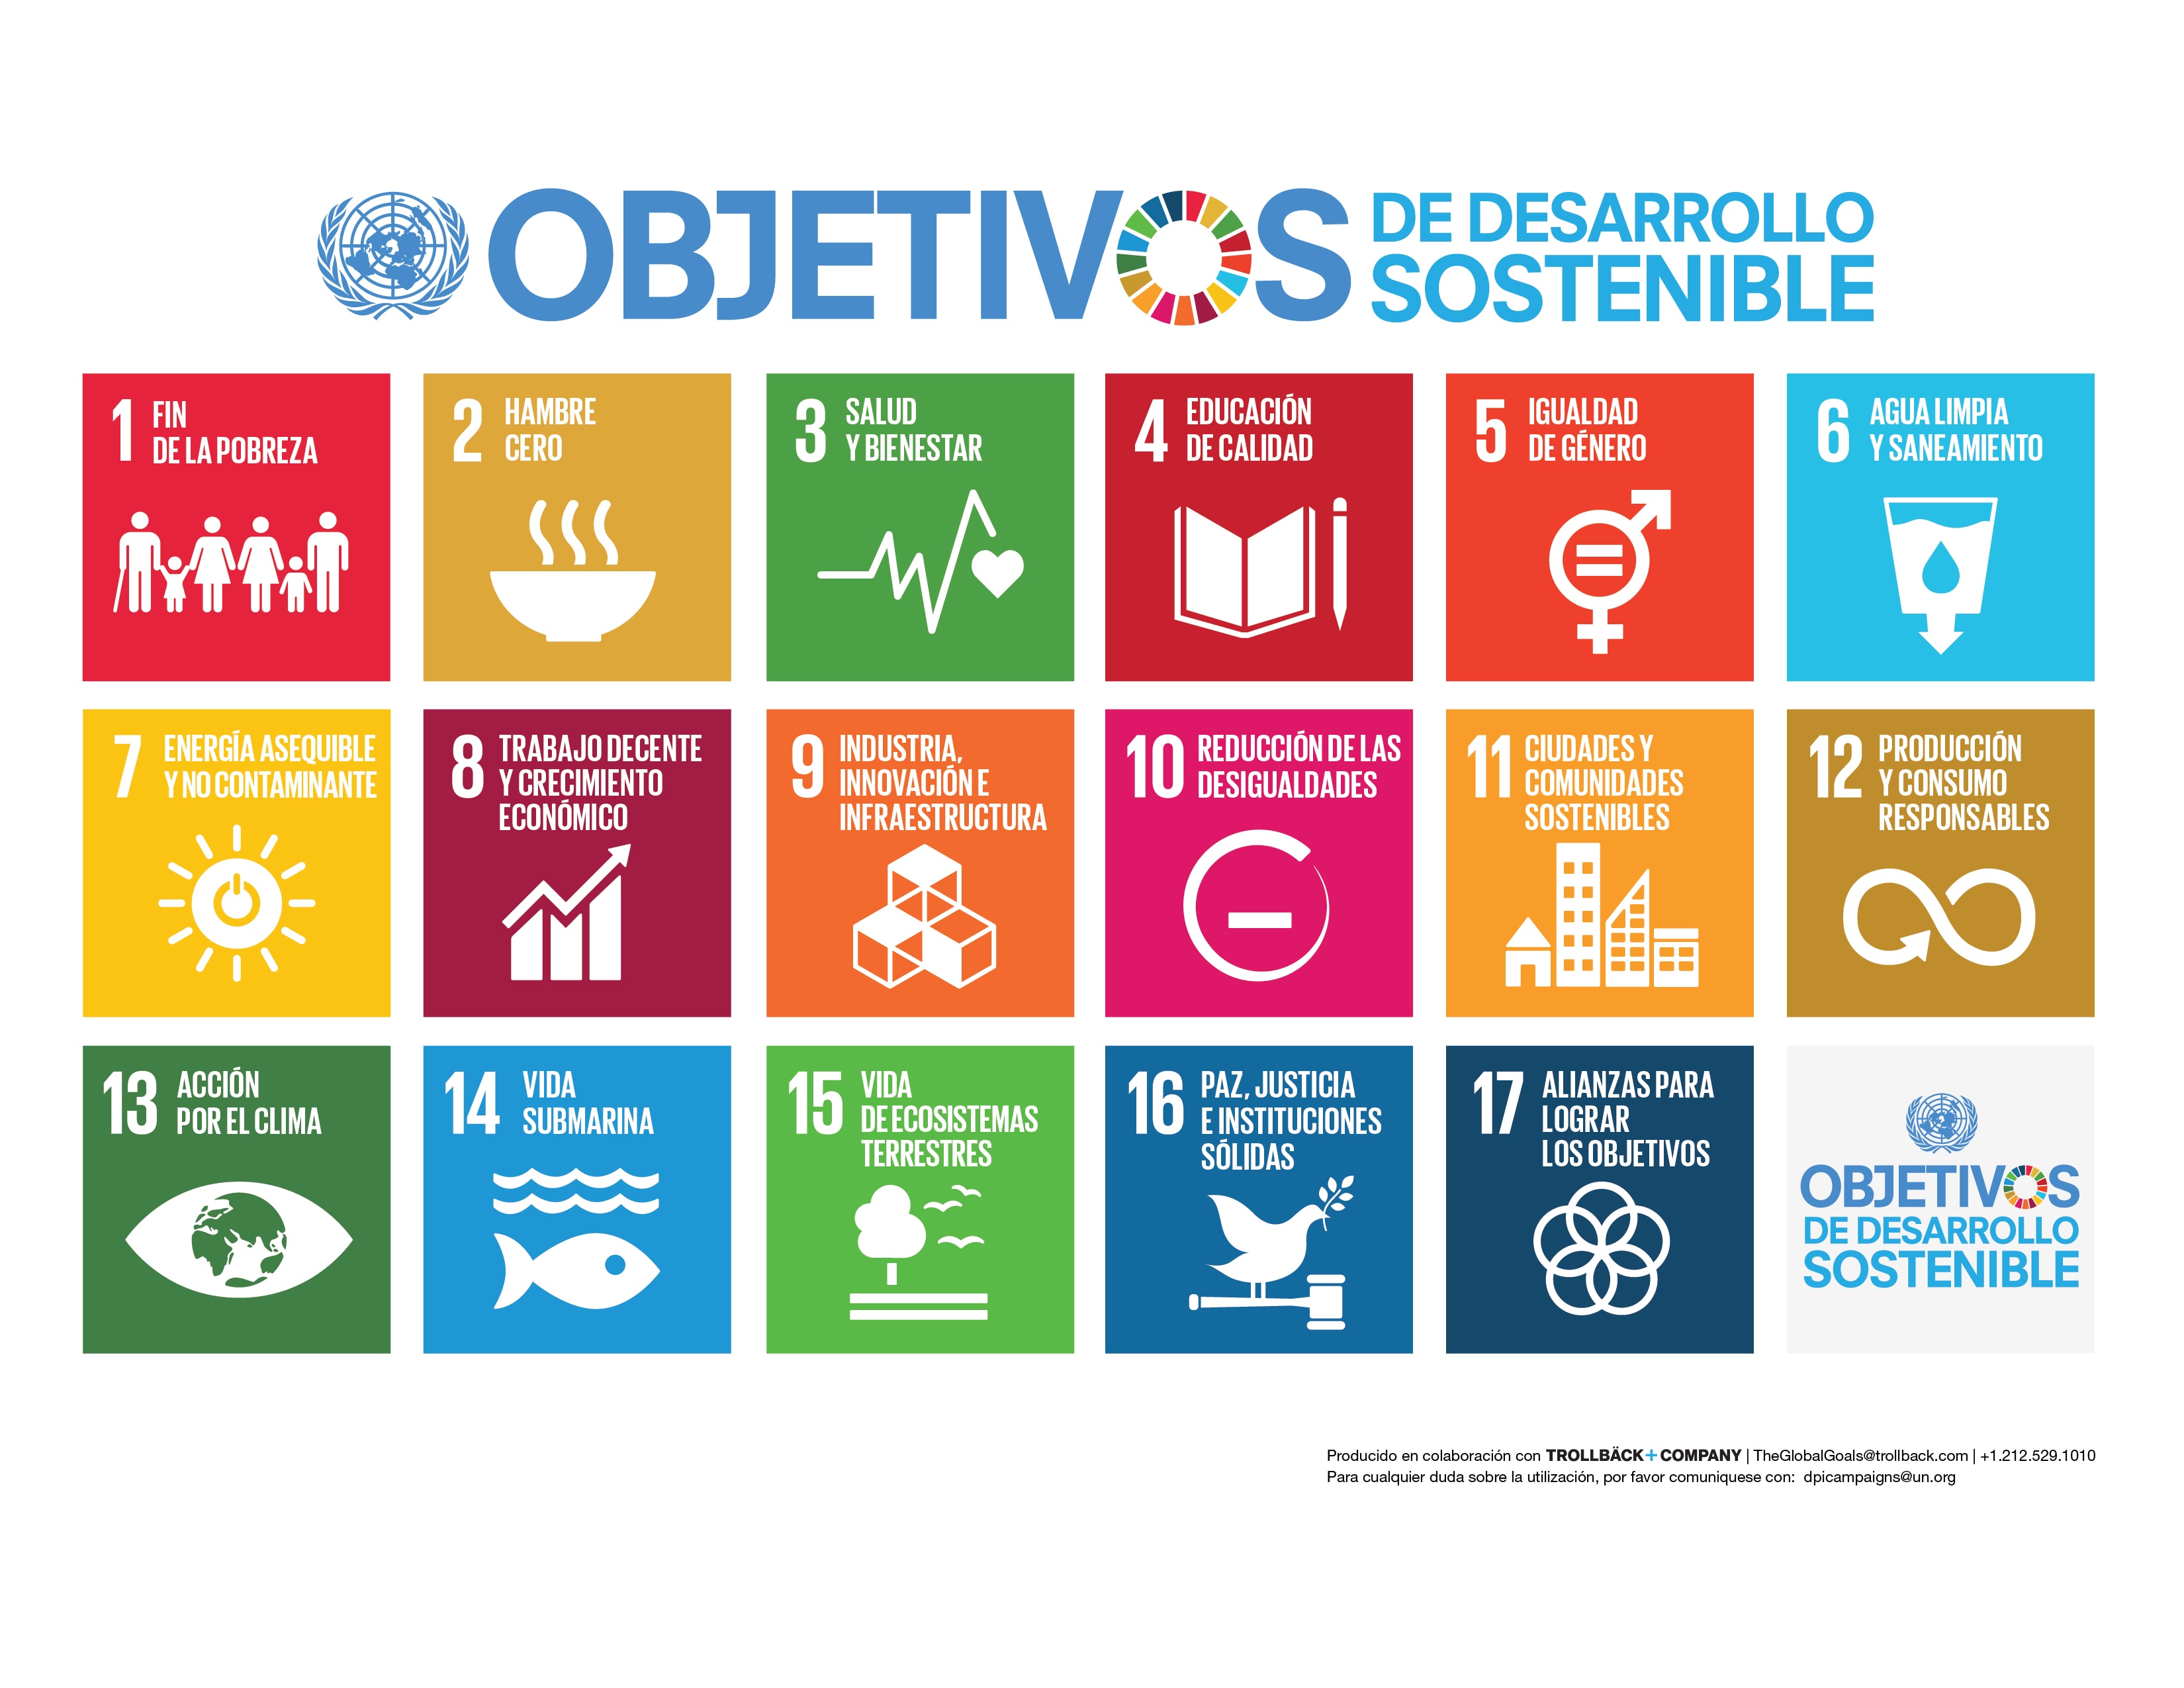 Fotografía de los Objetivos de Desarrollo Sostenible de la Agenda 2030